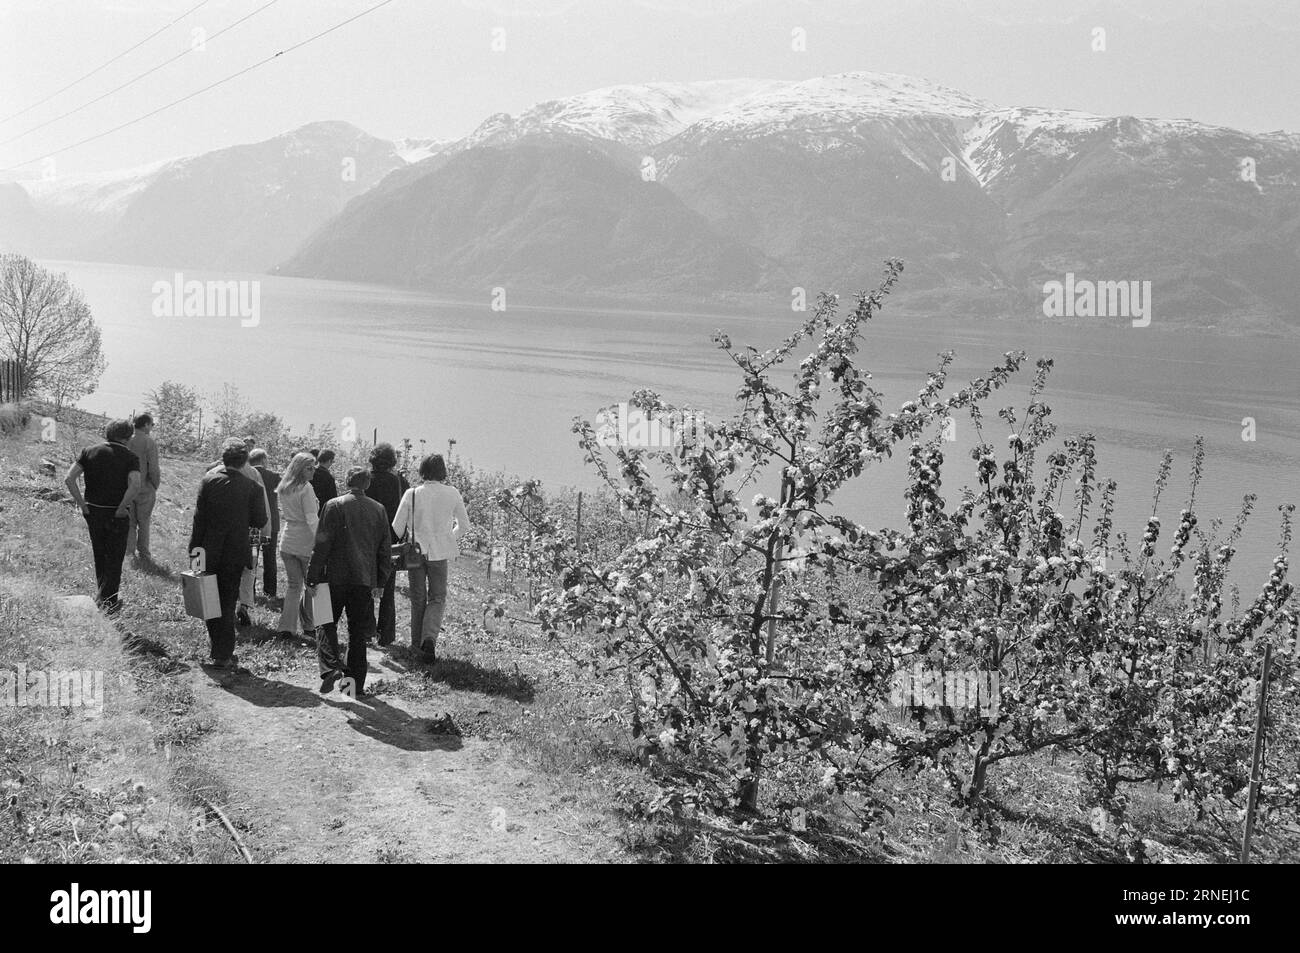 Current 21 - 1974 : maintenant, les choses fleurissent dans le comté fruitiqueLe jardin expérimental Njøs à Leikanger a aidé à trouver des arbres fruitiers qui prospèrent à Sogn et dans l'ouest de la Norvège en général. Les agriculteurs sur les bords, avec des jardins aux flancs escarpés qui ne conviennent pas à l'agriculture mécanisée, doivent investir dans la culture des fruits et des baies. Photo : Sverre A. Børretzen / Aktuell / NTB ***PHOTO NON TRAITÉE*** ce texte a été traduit automatiquement! Banque D'Images